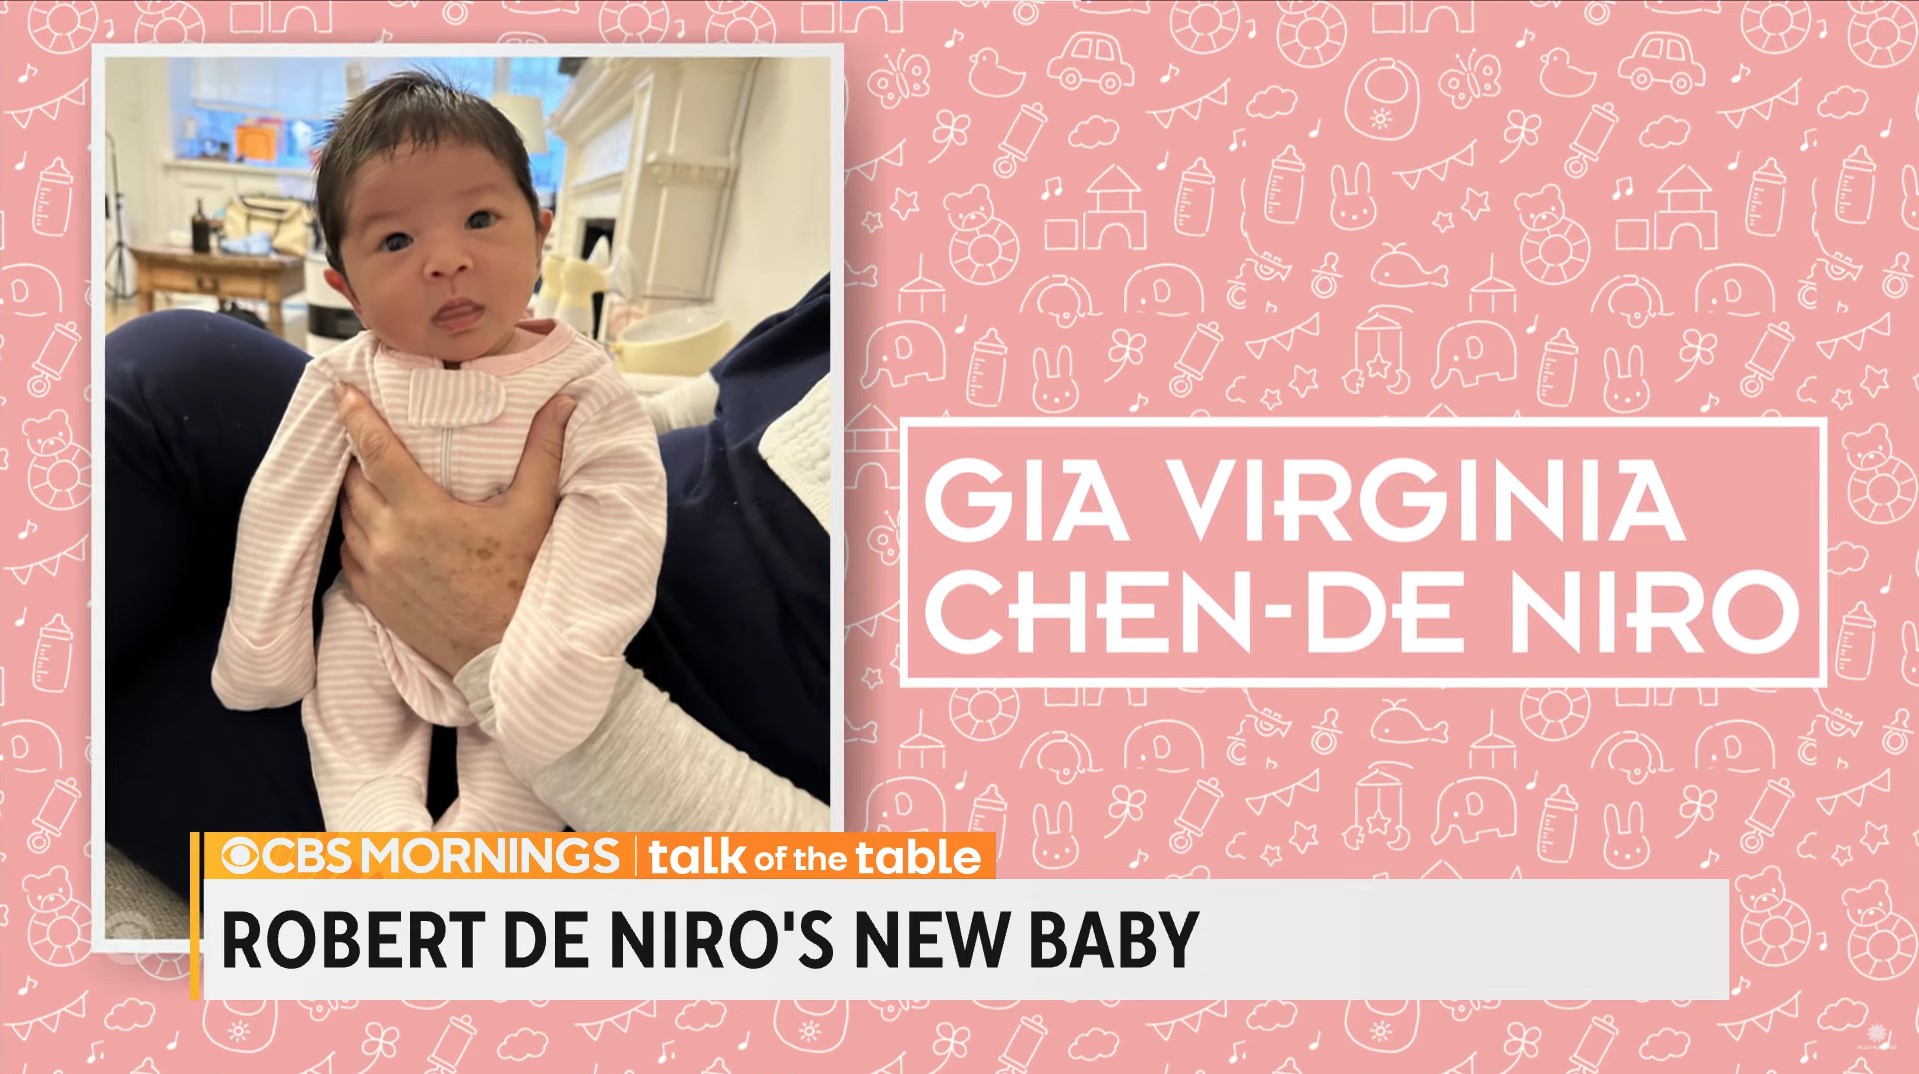 La primera foto de Gia Virginia Chen-De Niro, fue compartida por el medio CBS Mornings
Foto: YouTube/CBS Mornings